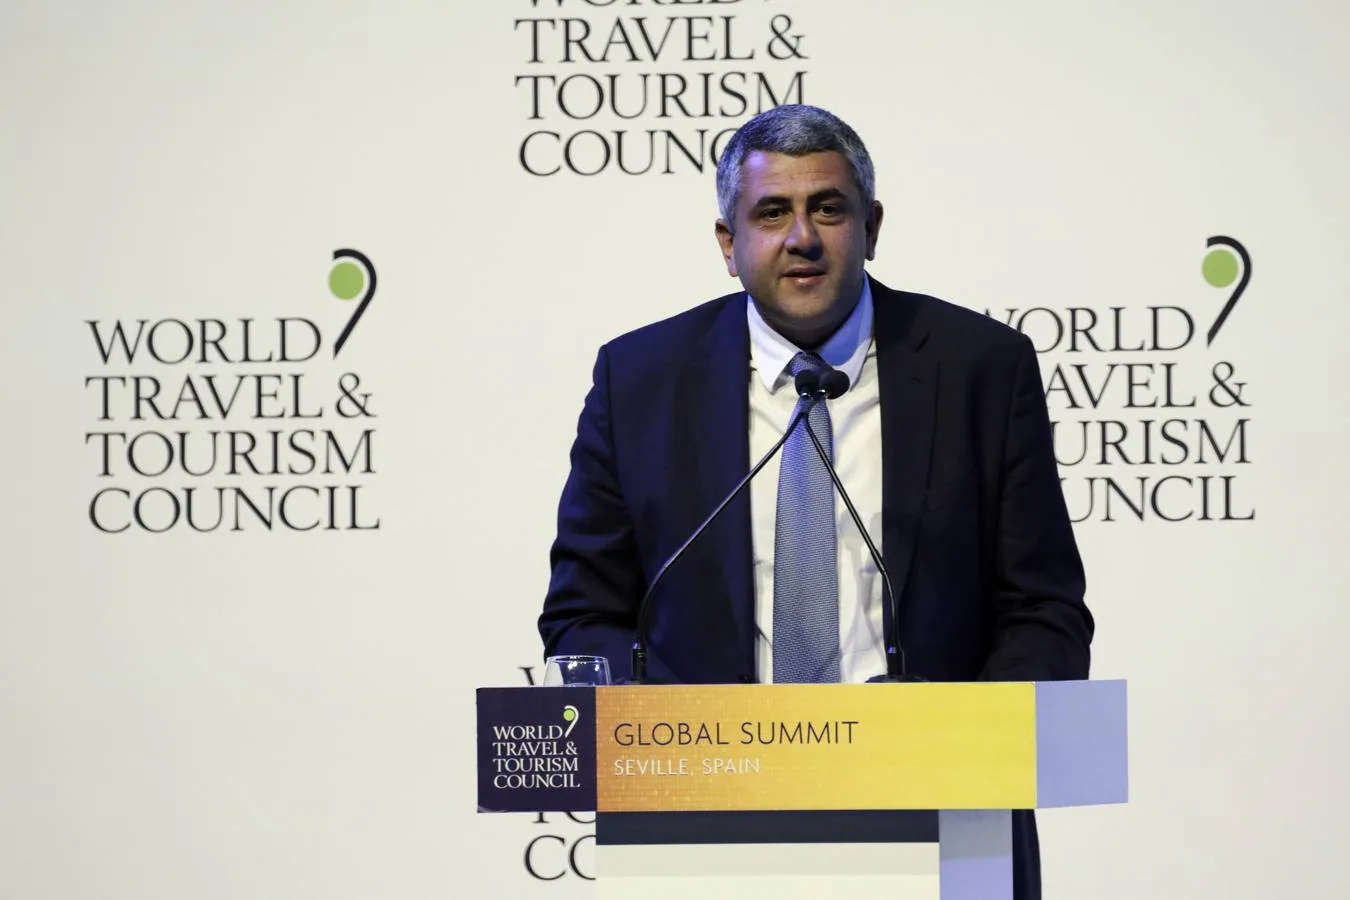 La cumbre del consejo mundial de turismo, en imágenes